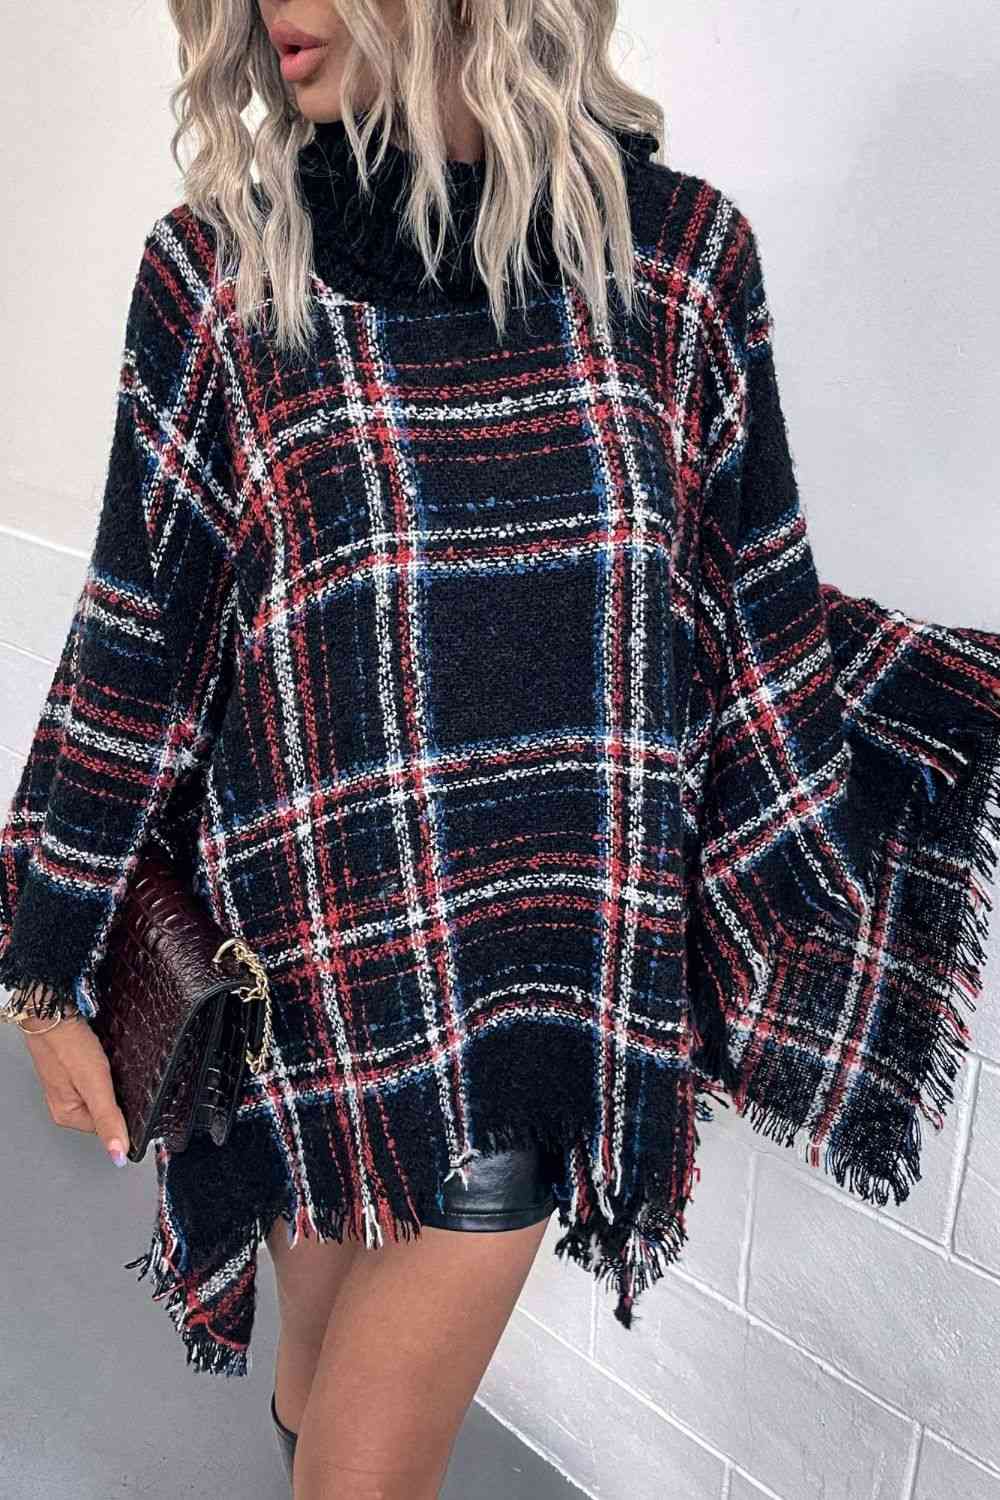 Plaid Turtleneck Poncho with Fringe Hem - Stylish Winter Fashion